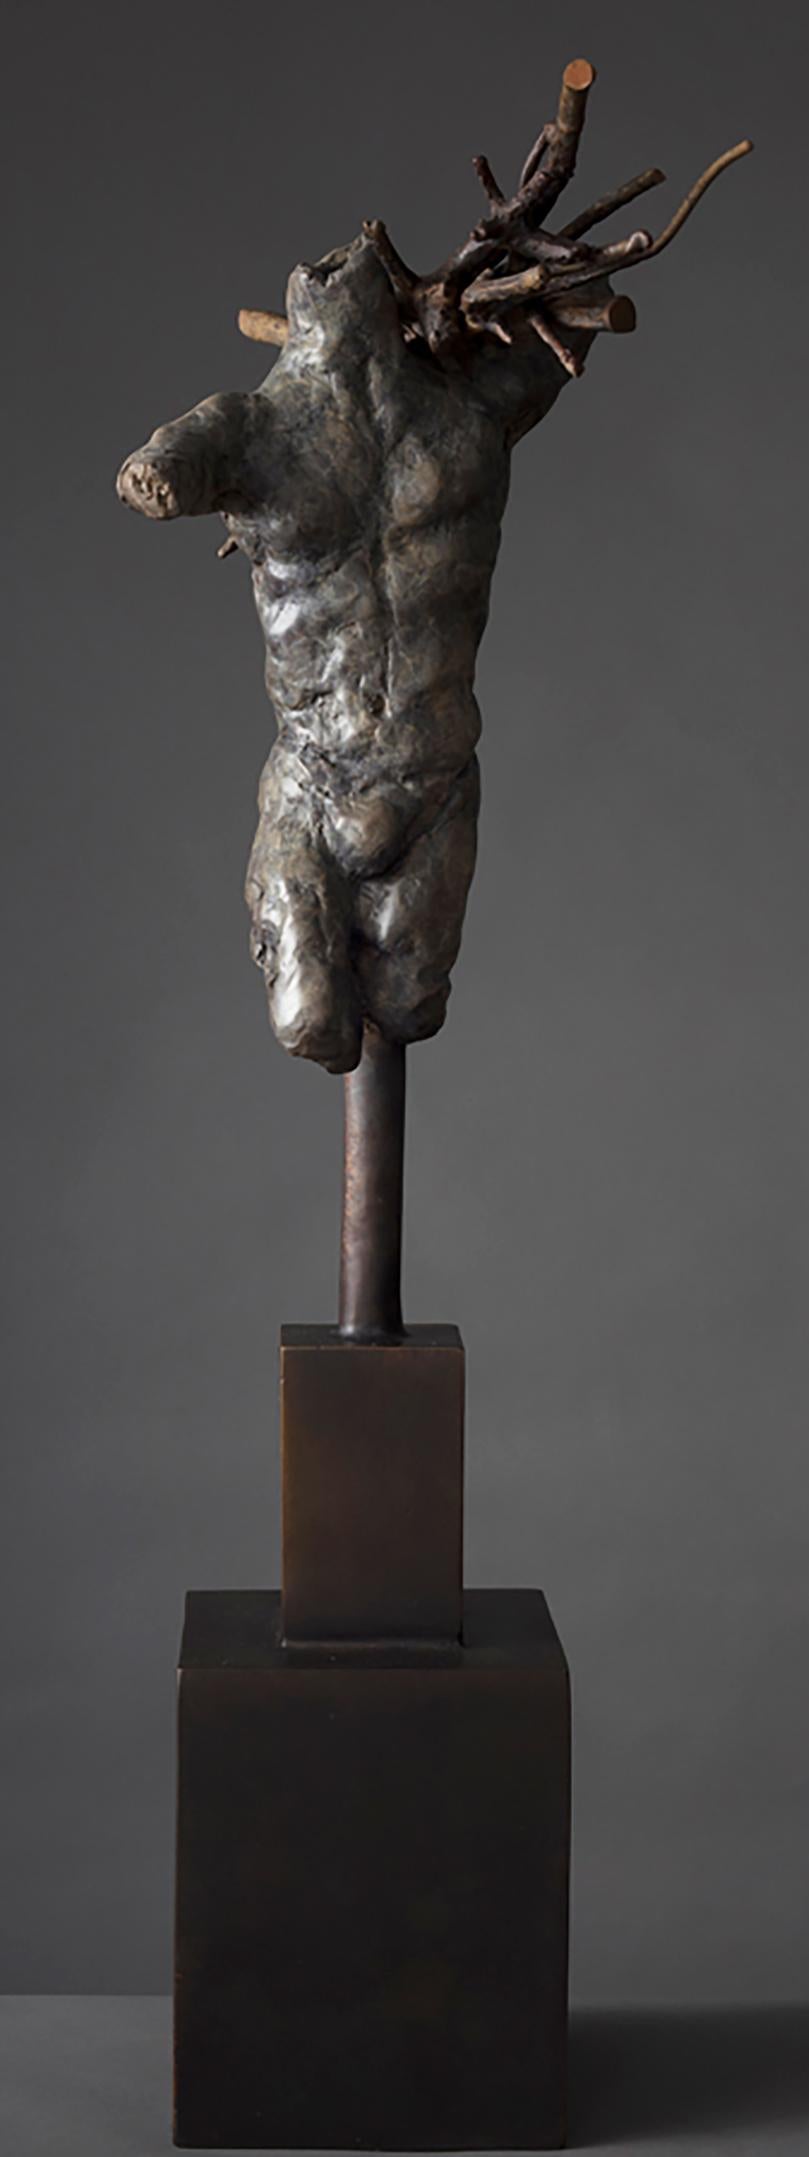 Sammler – Sculpture von Rod Oneglia